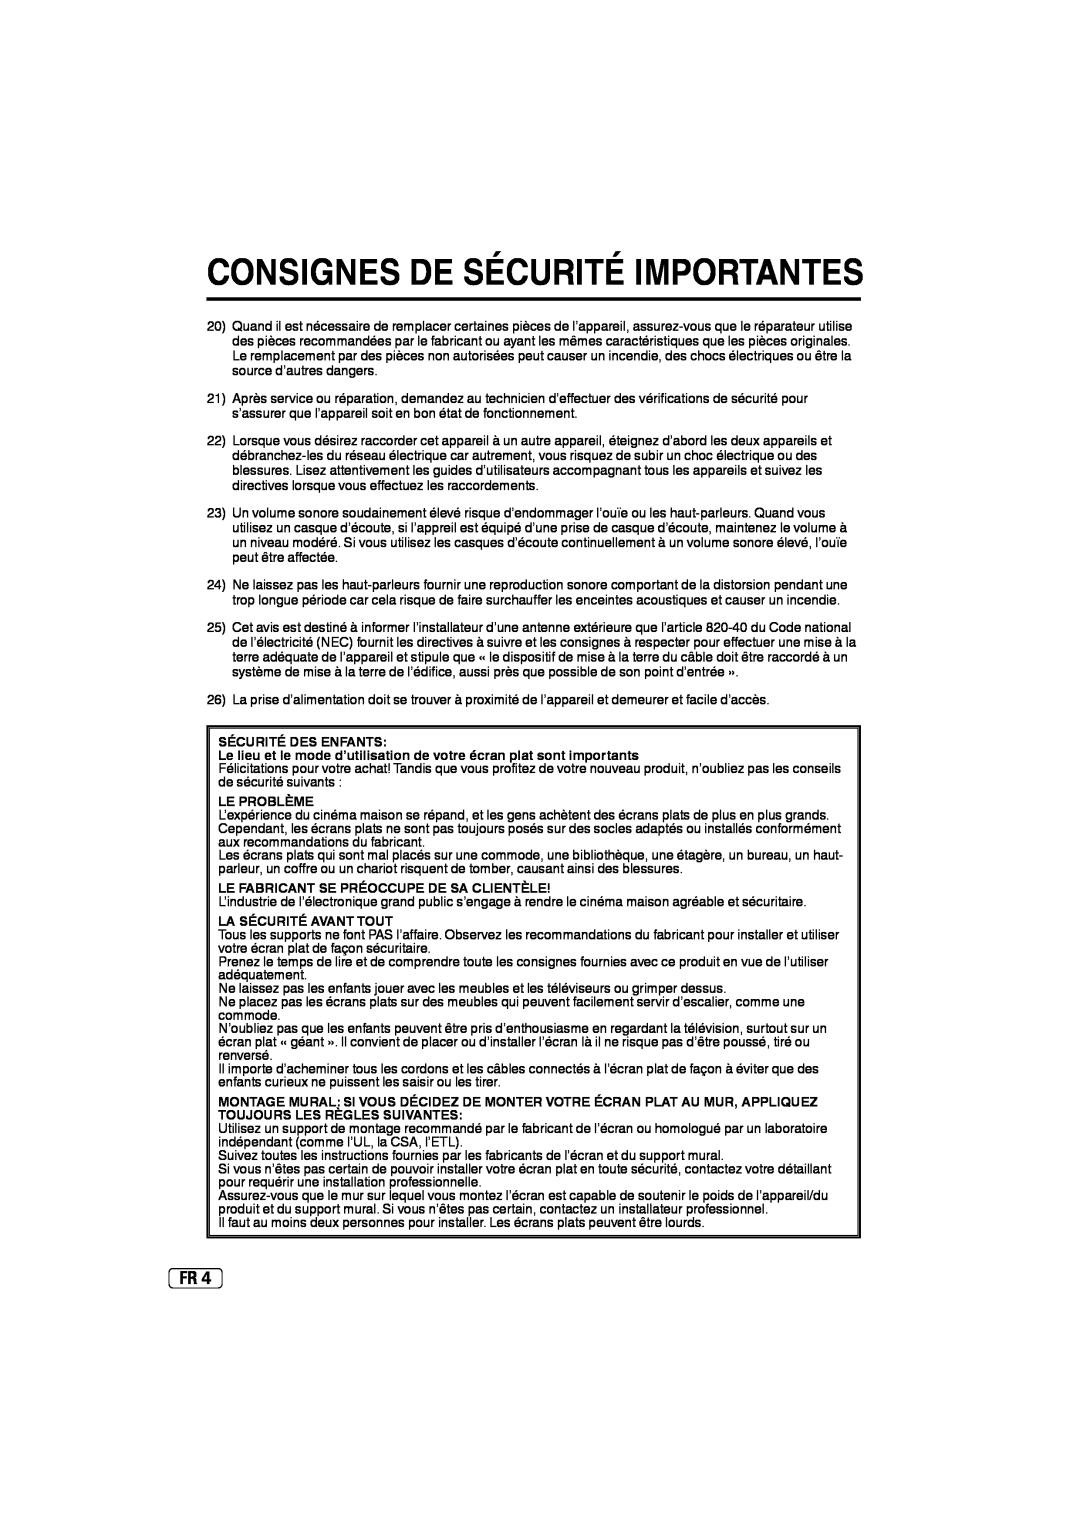 Sansui SLED2237 owner manual Consignes De Sécurité Importantes, Sécurité Des Enfants, Le Problème, La Sécurité Avant Tout 